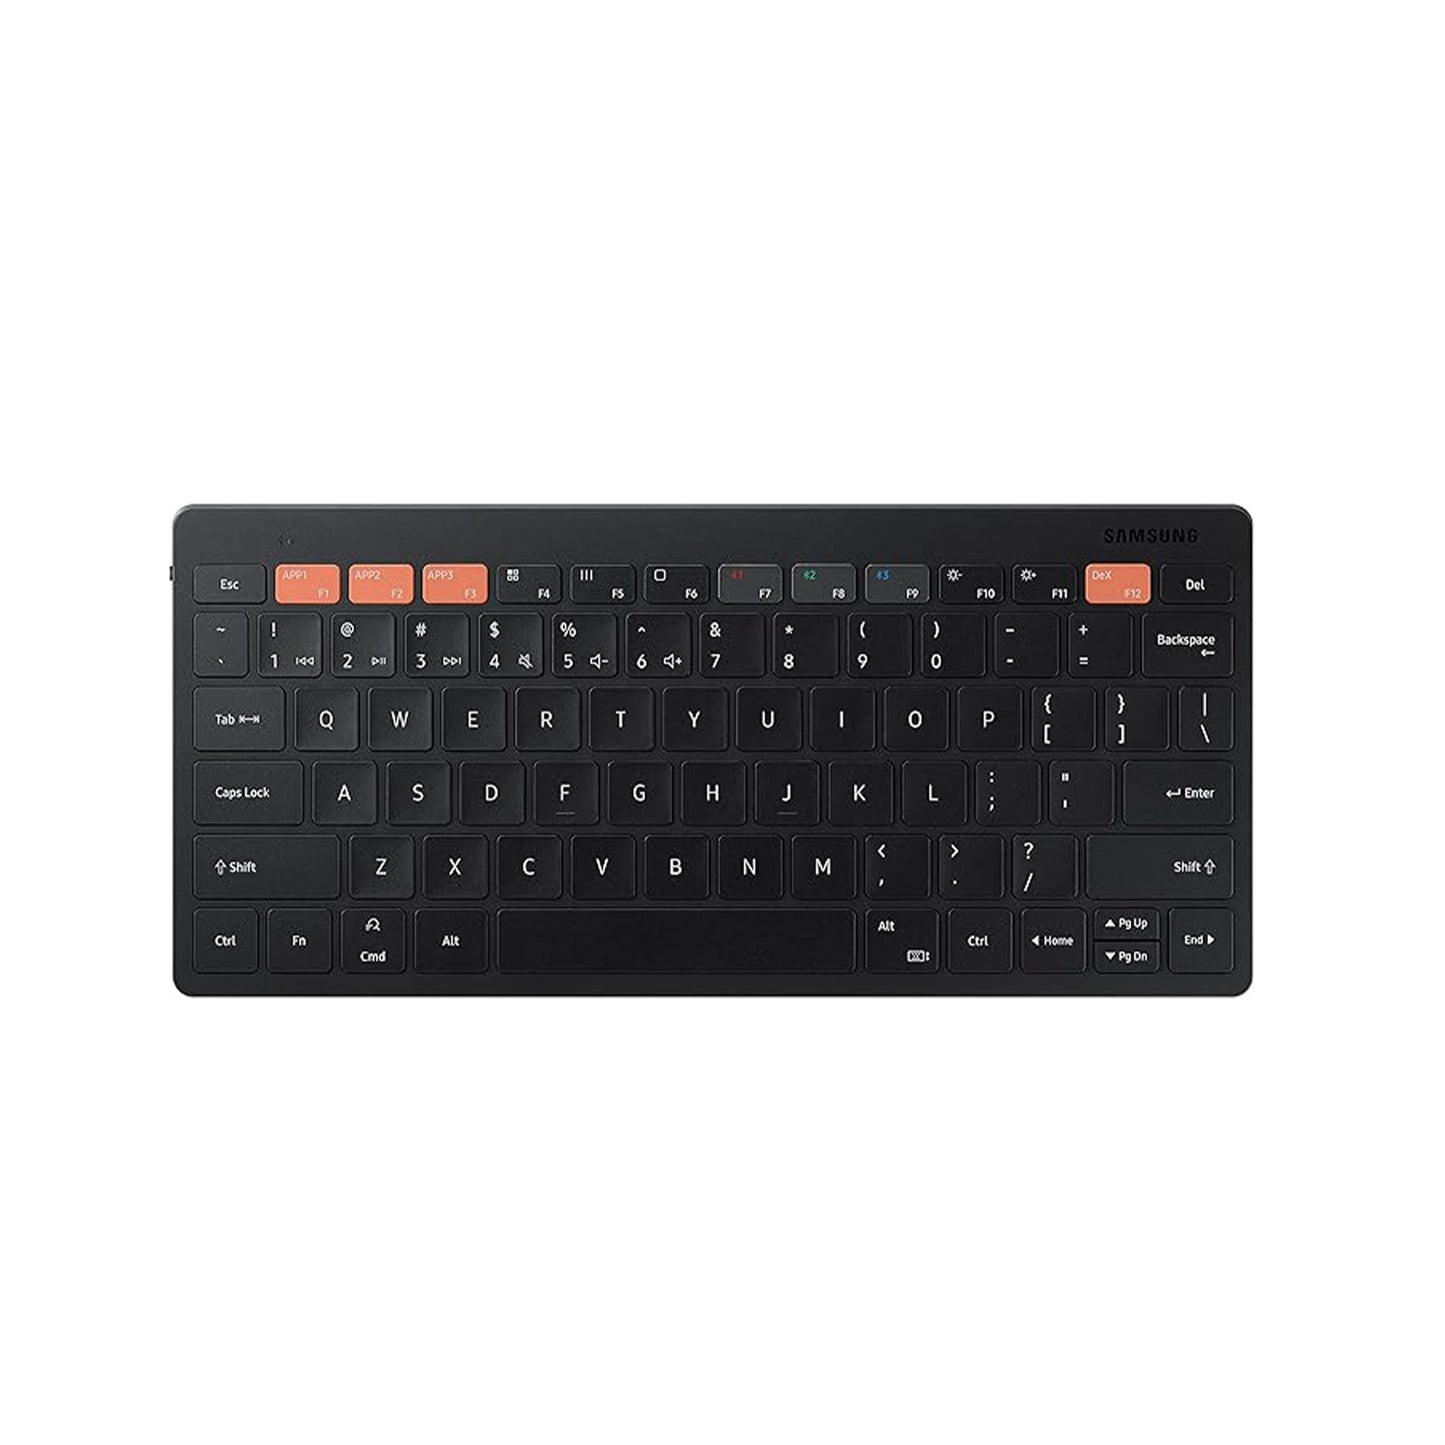 لوحة المفاتيح الذكية الرسمية سامسونج تريو 500 (EJ-B3400UBEGUS)، أسود - موديل أمريكي 